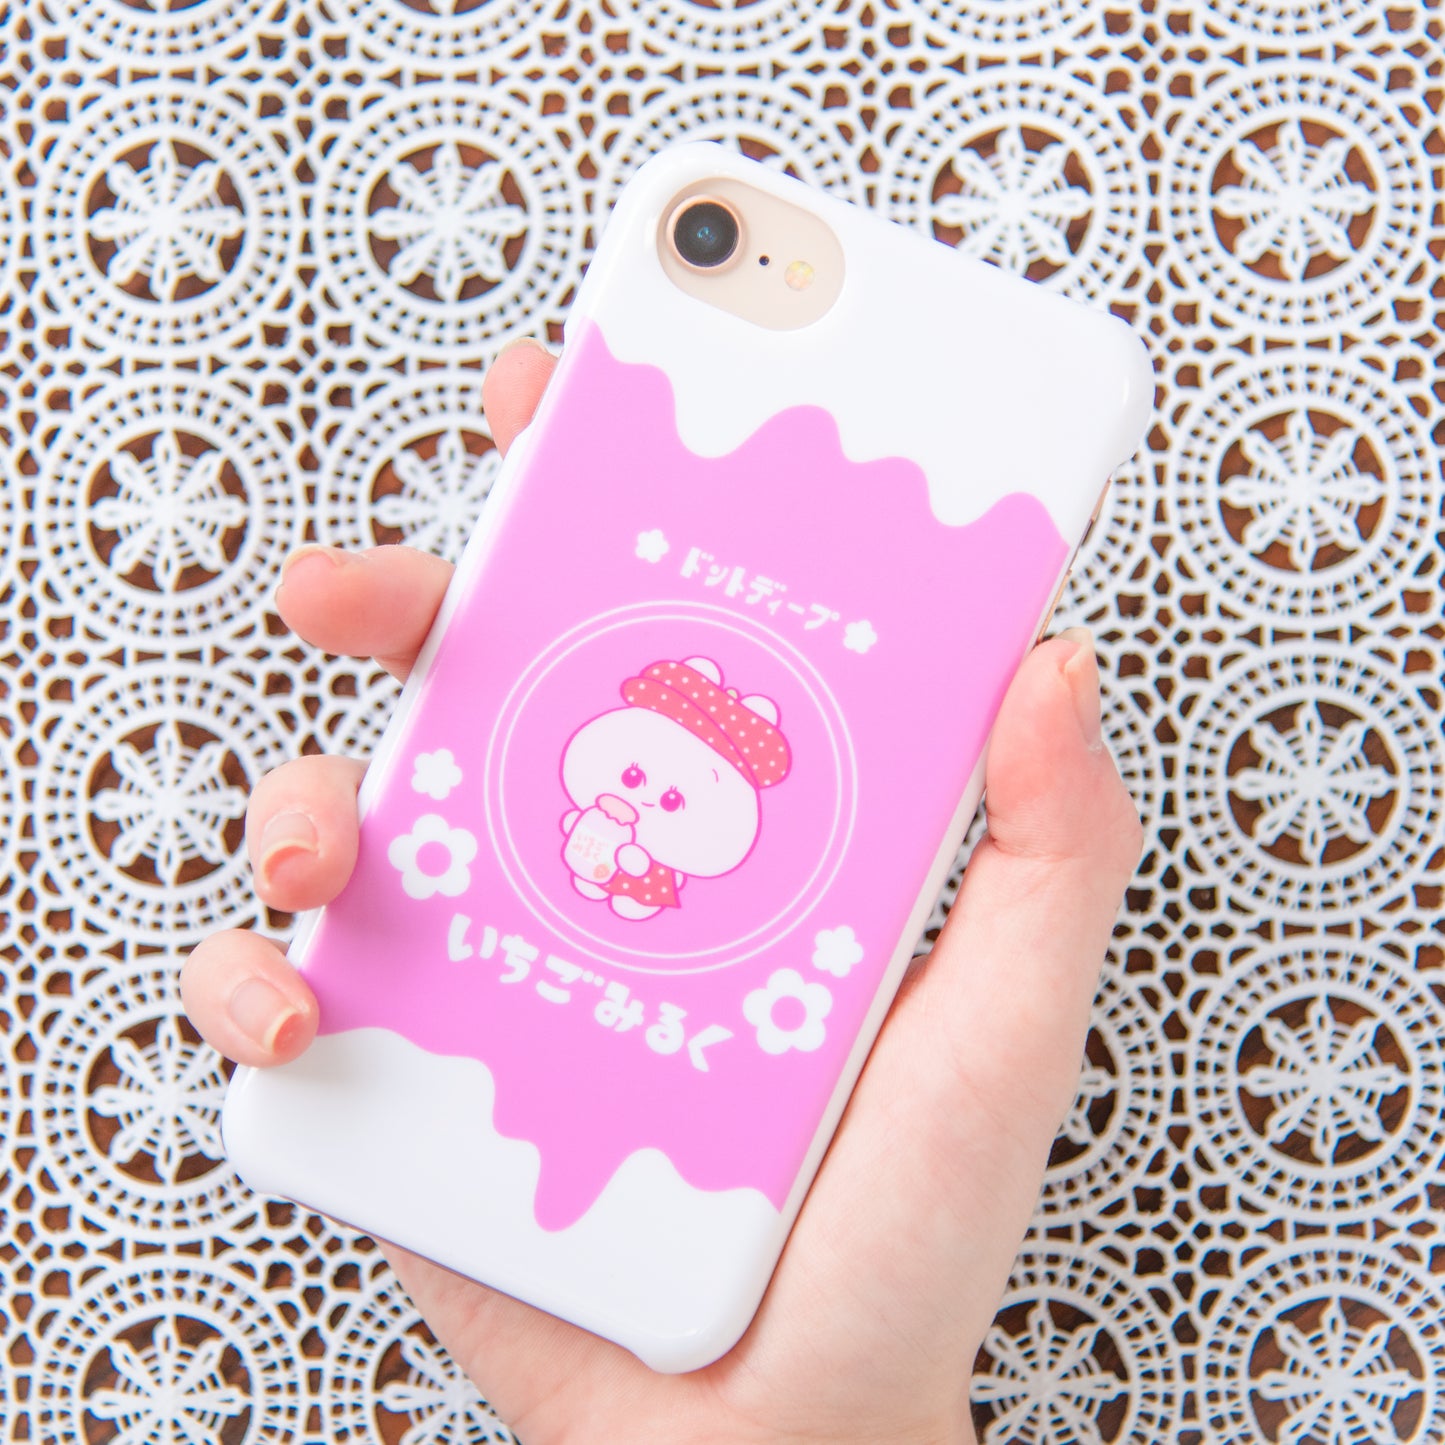 [Asamimi-chan] Custodia per smartphone compatibile con quasi tutti i modelli (Ichigo Milk) della serie Y!mobile [Su ordinazione]